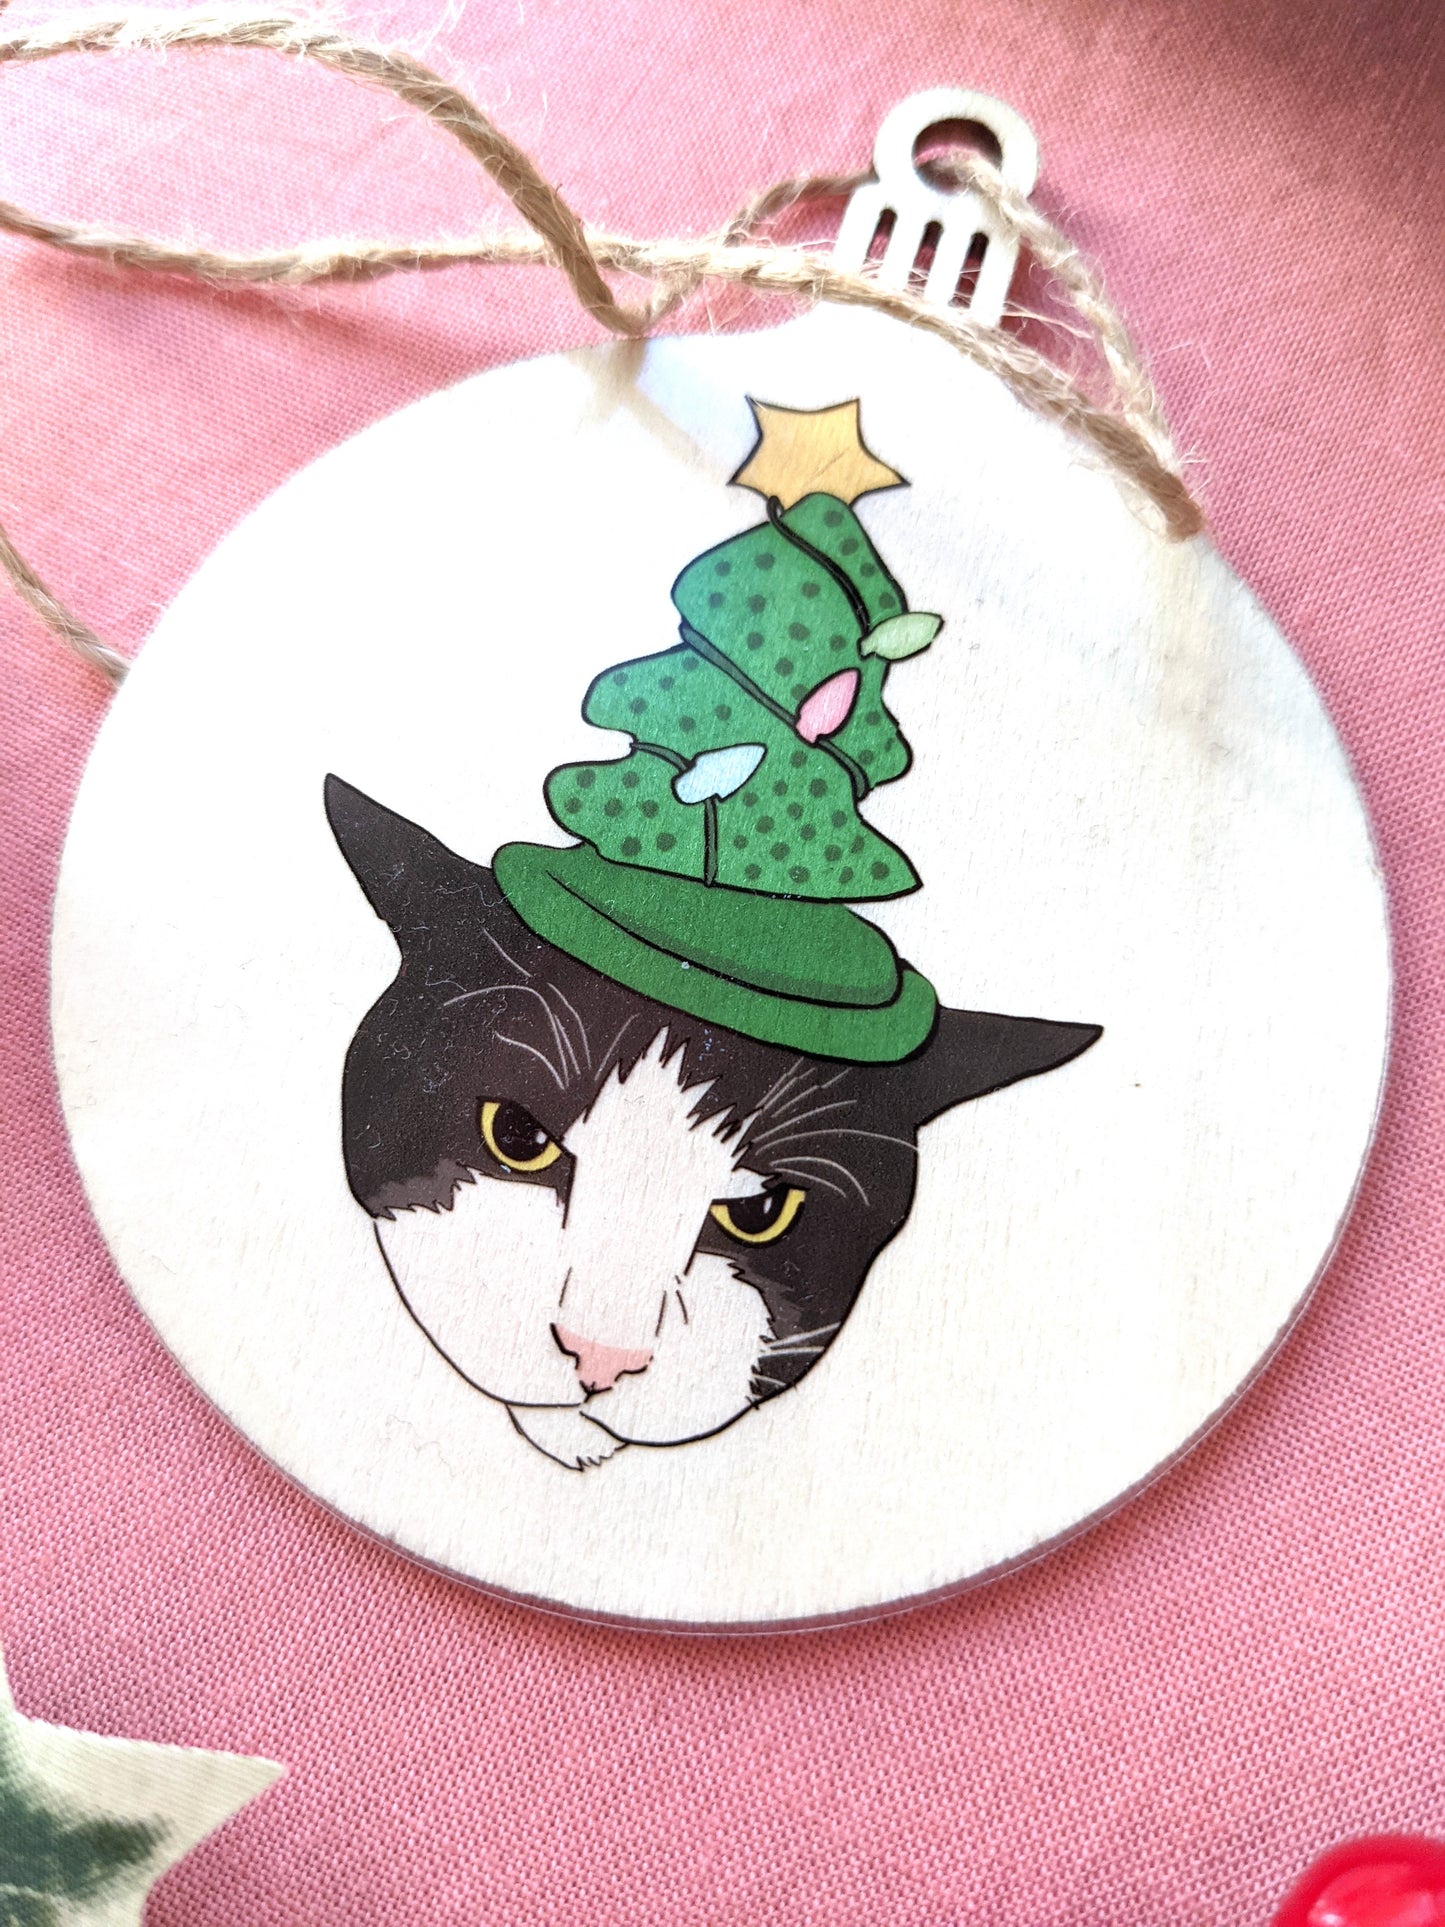 Pet Portrait Christmas Ornaments